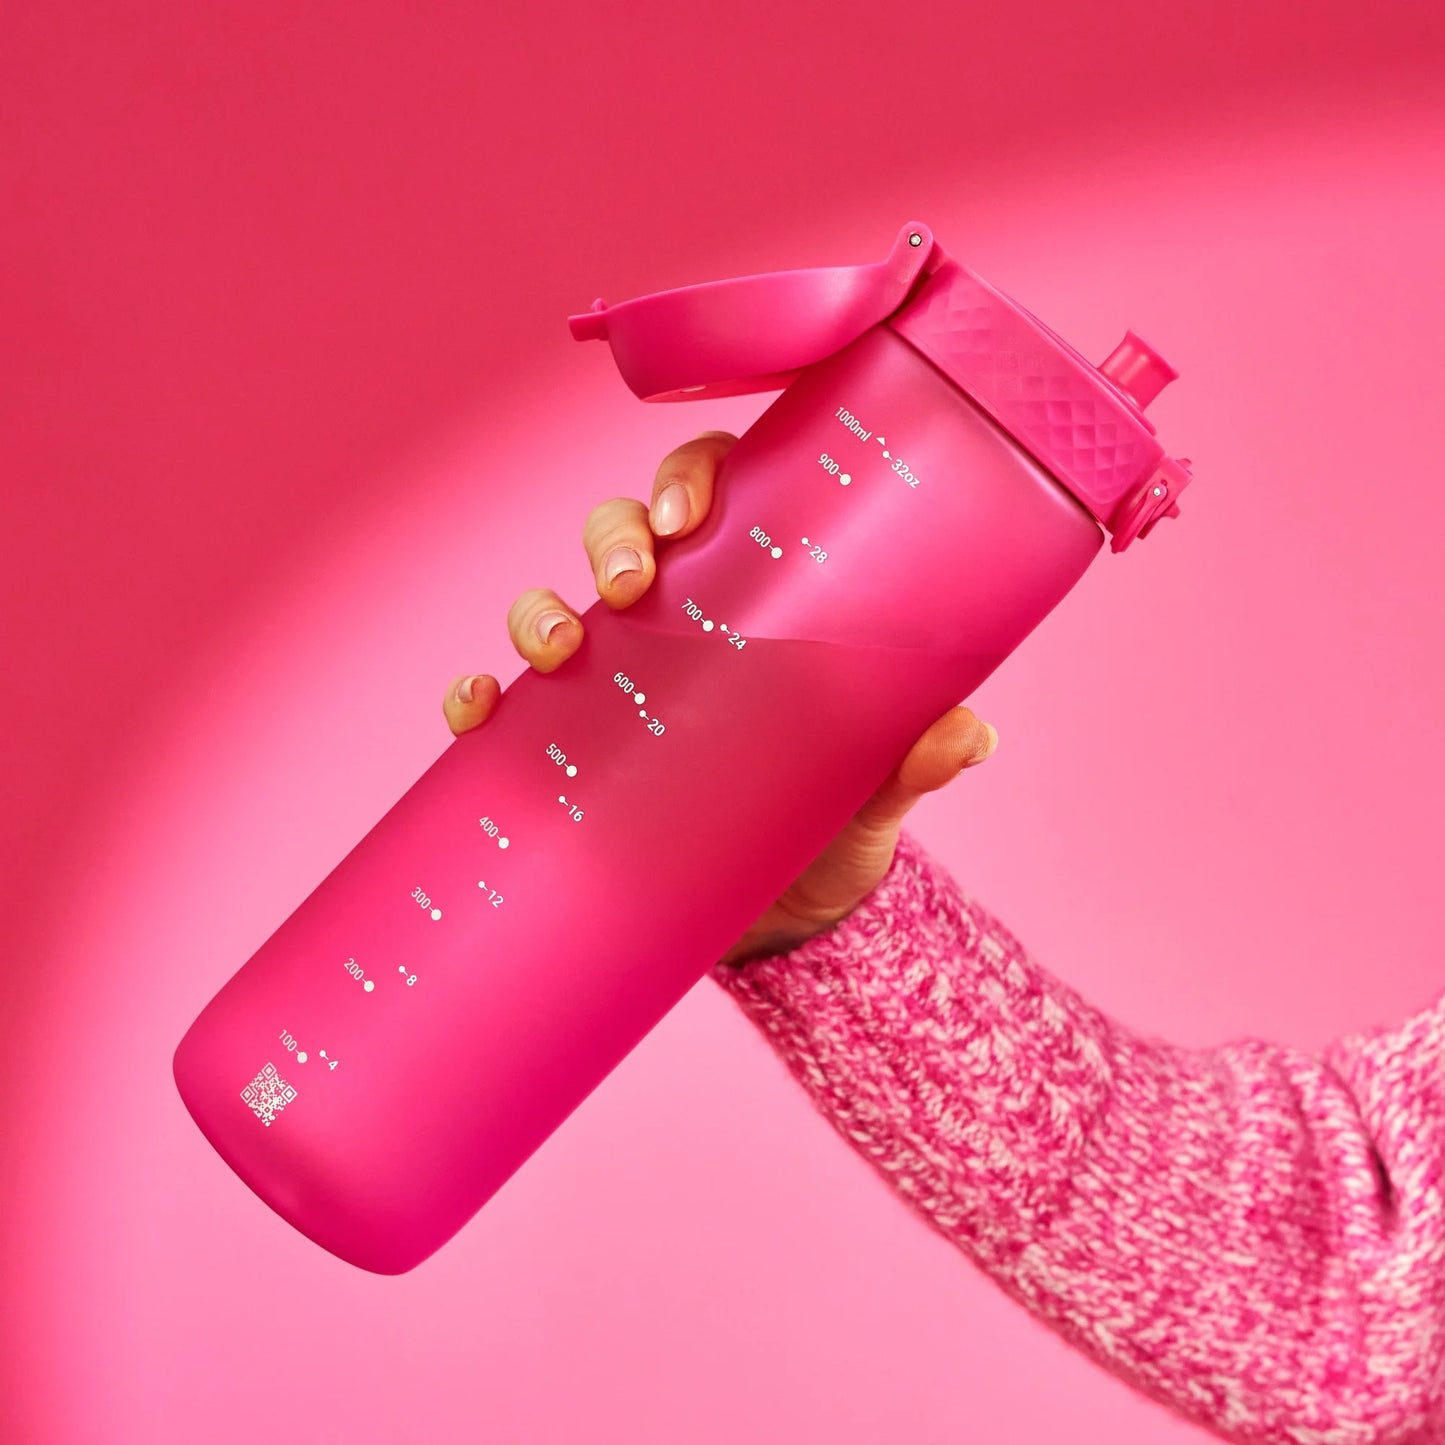 Leak Proof 1 litre Water Bottle, Recyclon™, Pink, 1L